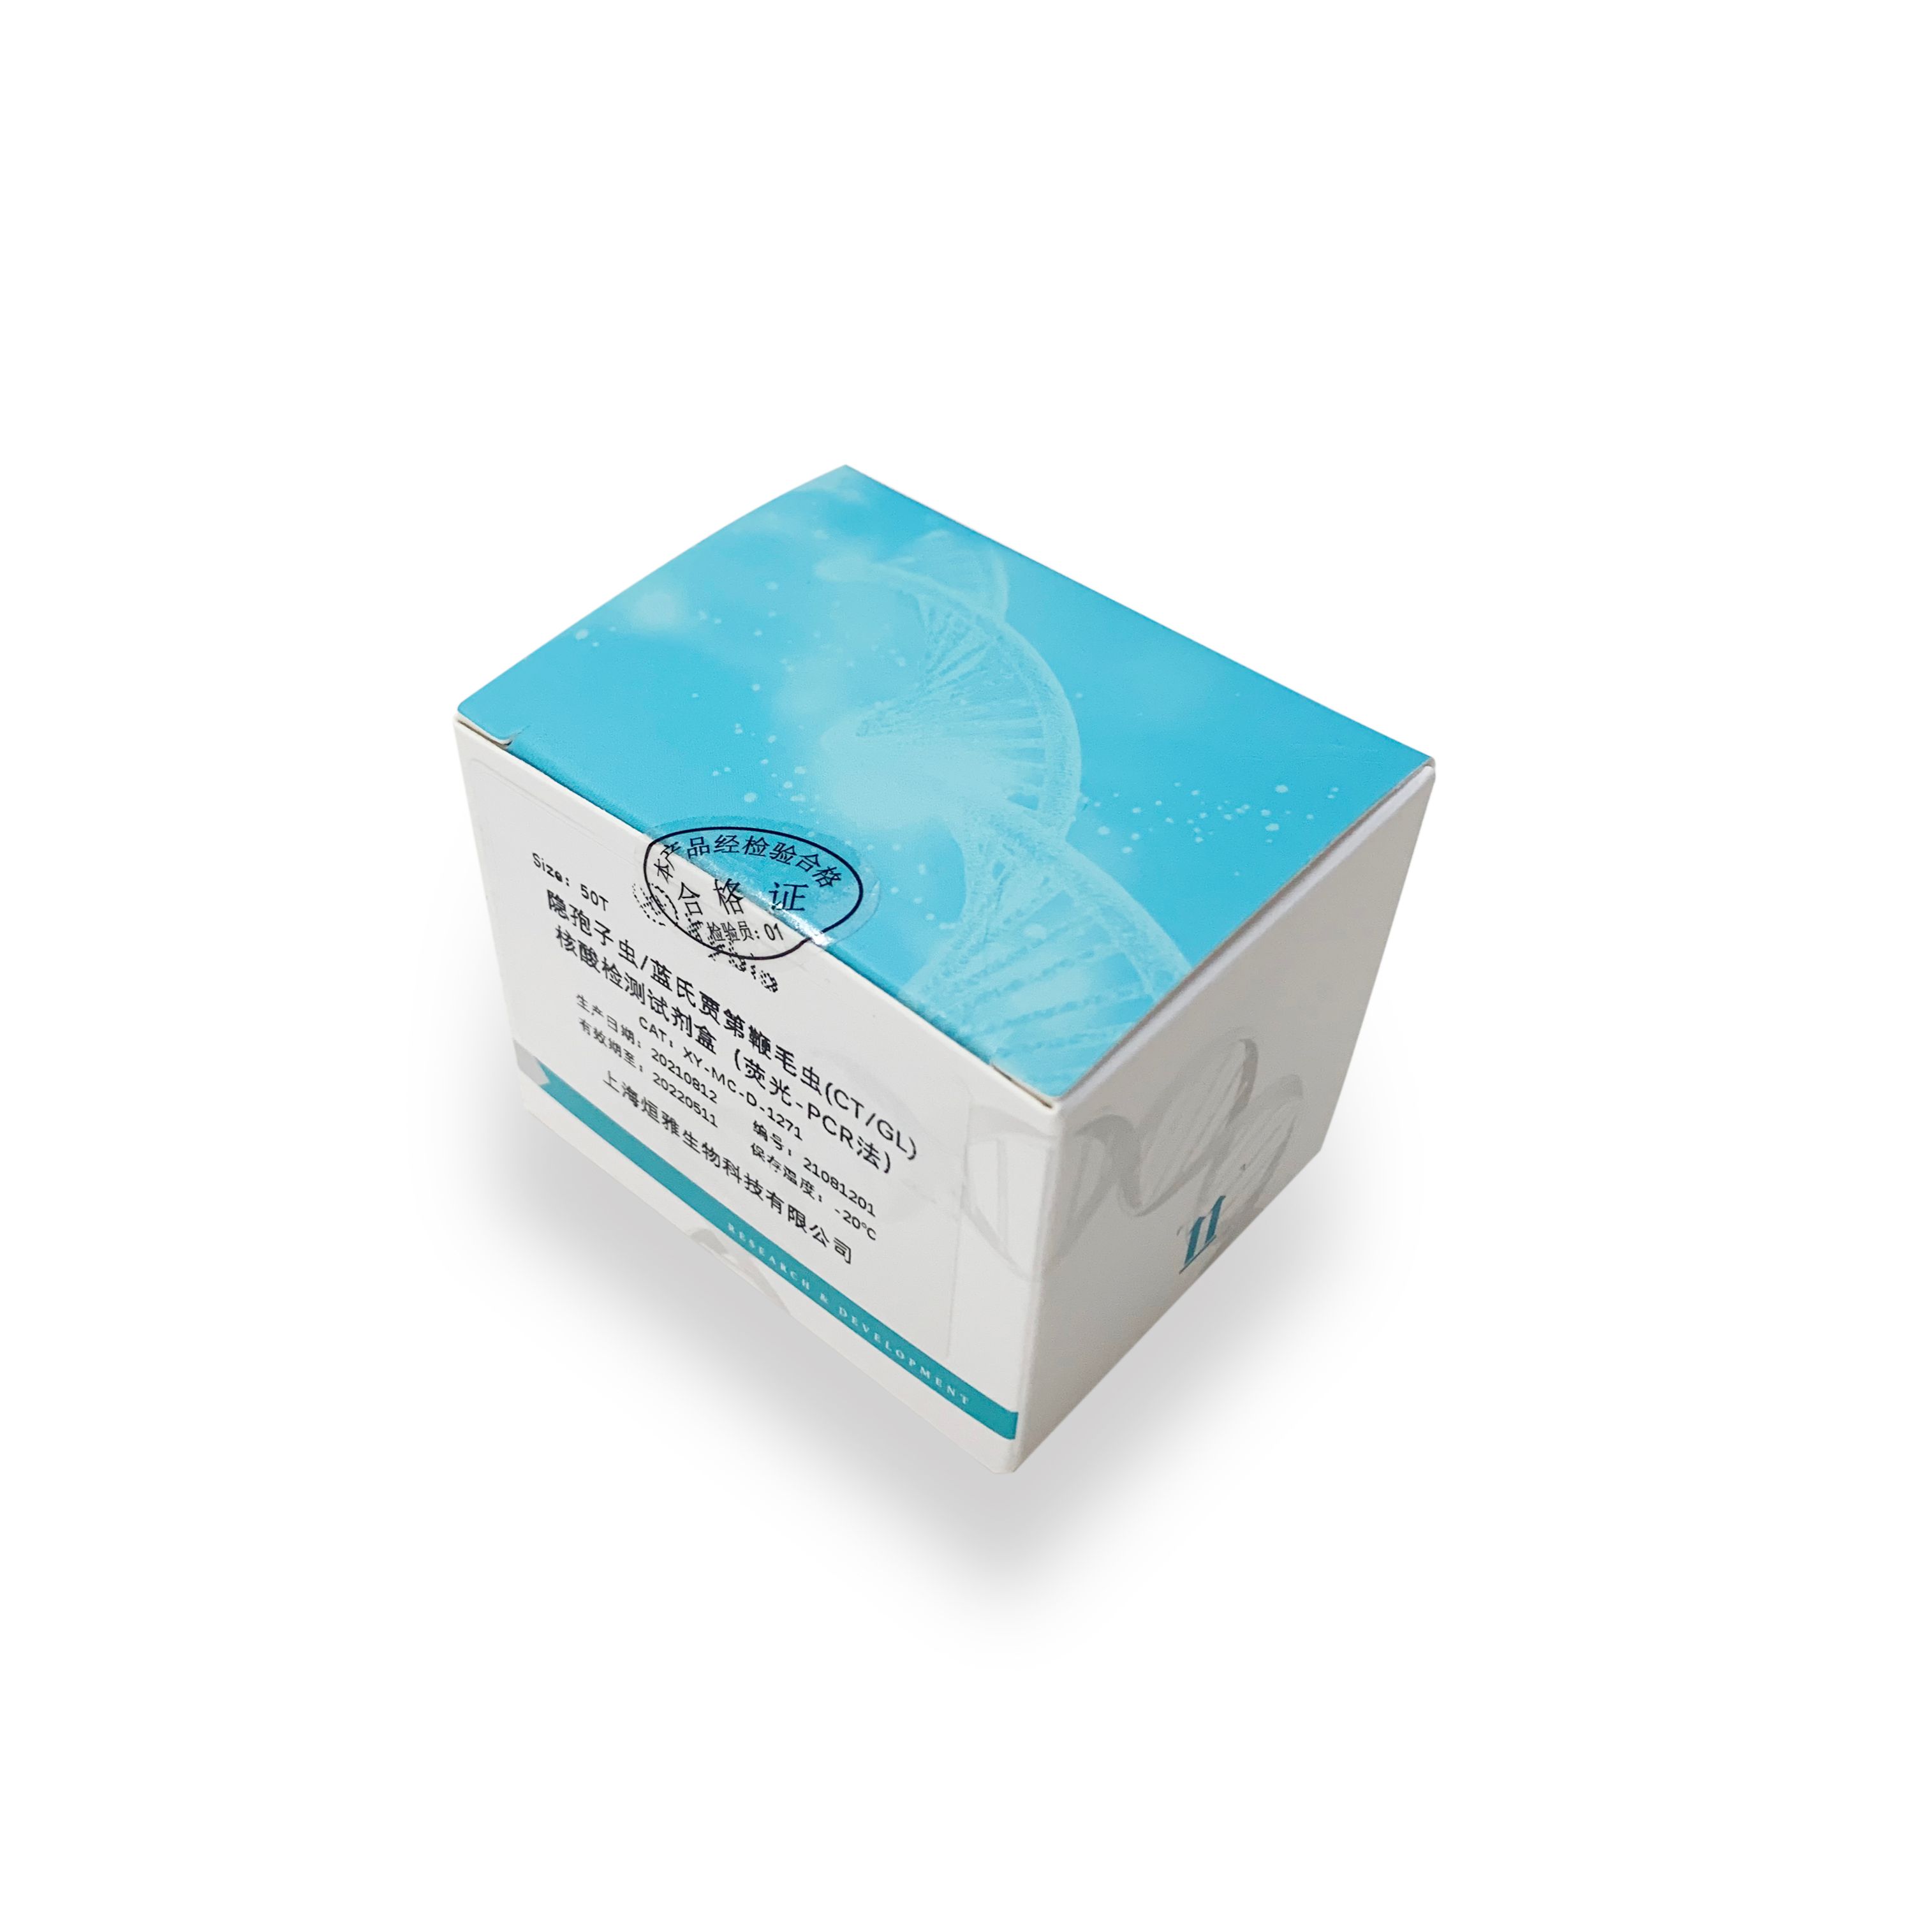 甲型流感/乙型流感双重RT-PCR试剂盒